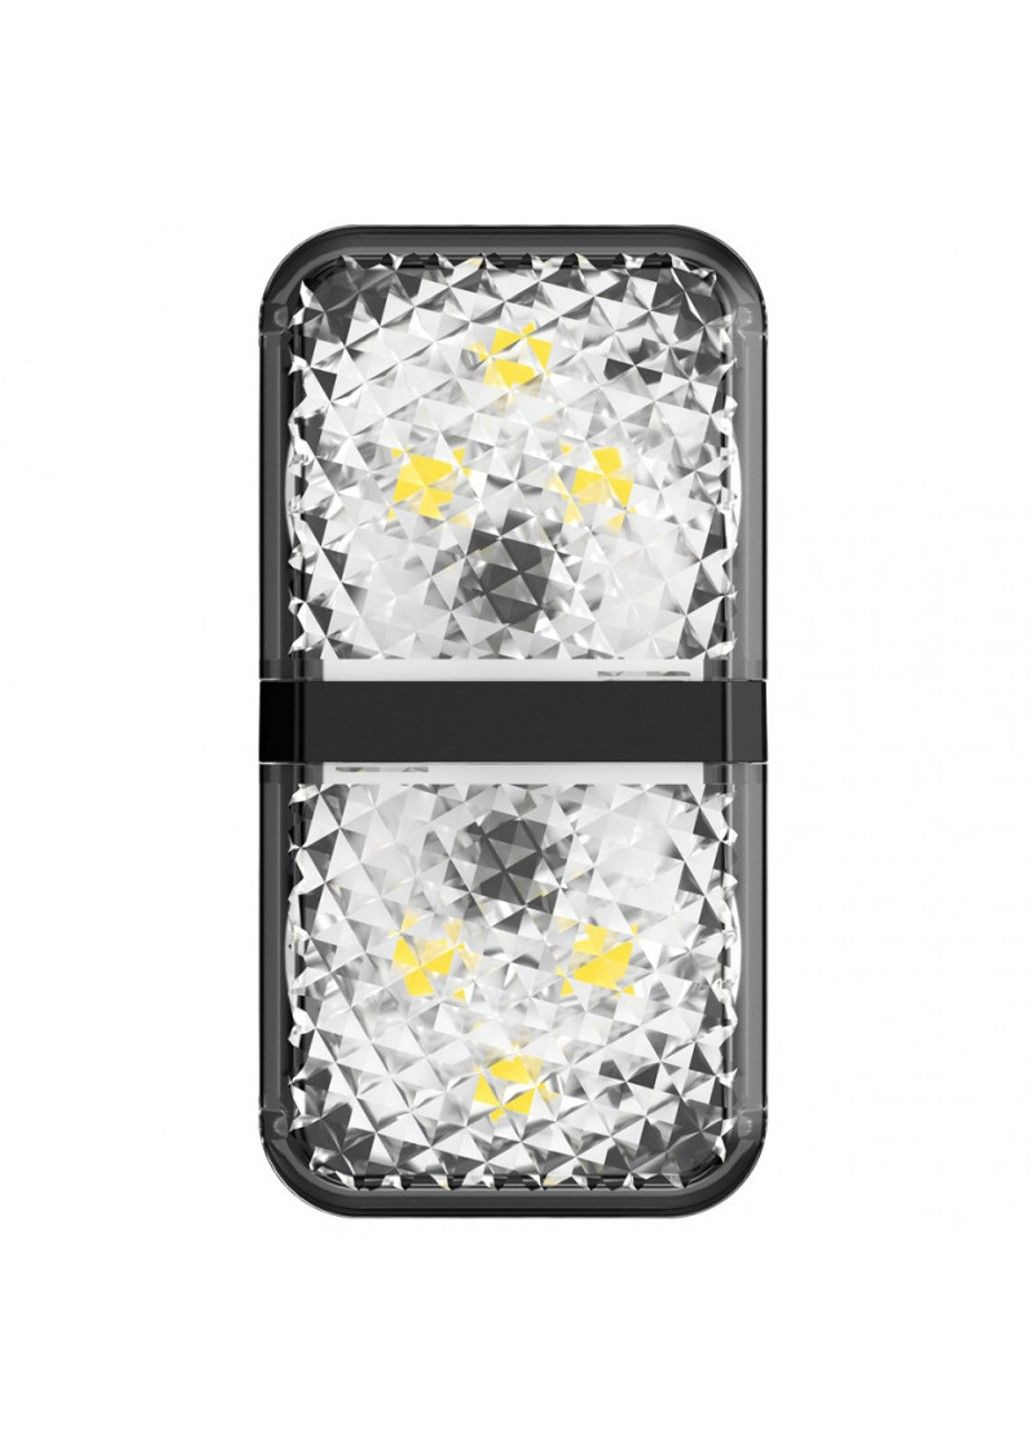 Автомобильная лампа Warning Light, дверная, (2 шт/уп) (CRFZD) Baseus (294722965)